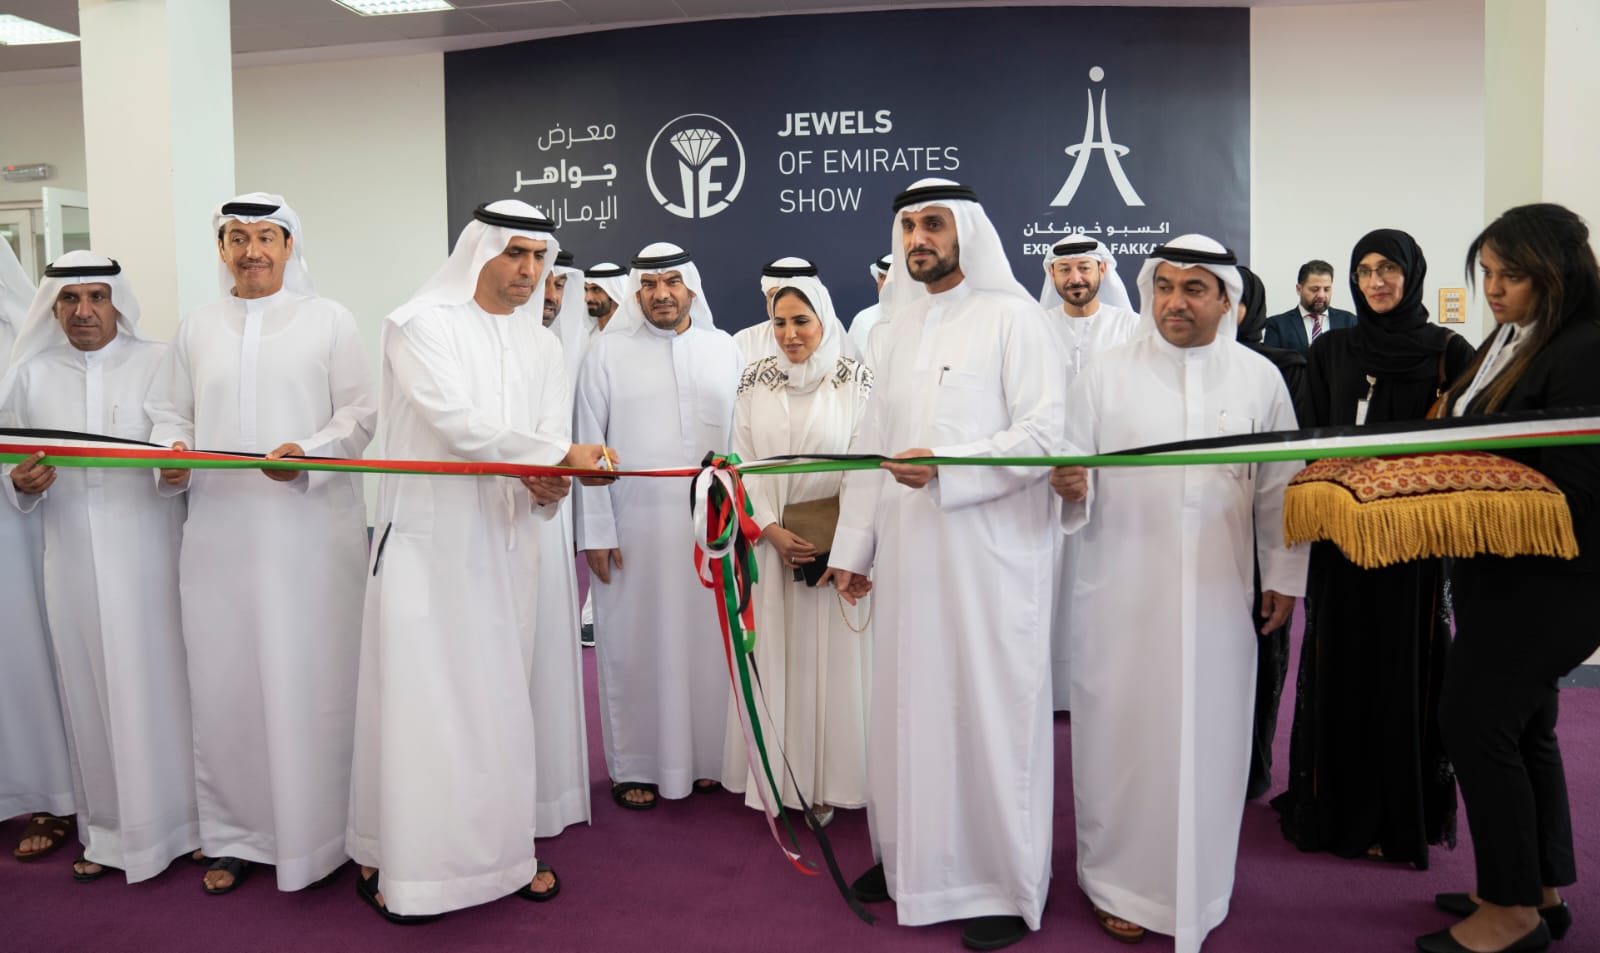 انطلاق فعاليات معرض "جواهر الإمارات" للمرة الأولى في مركز إكسبو خورفكان